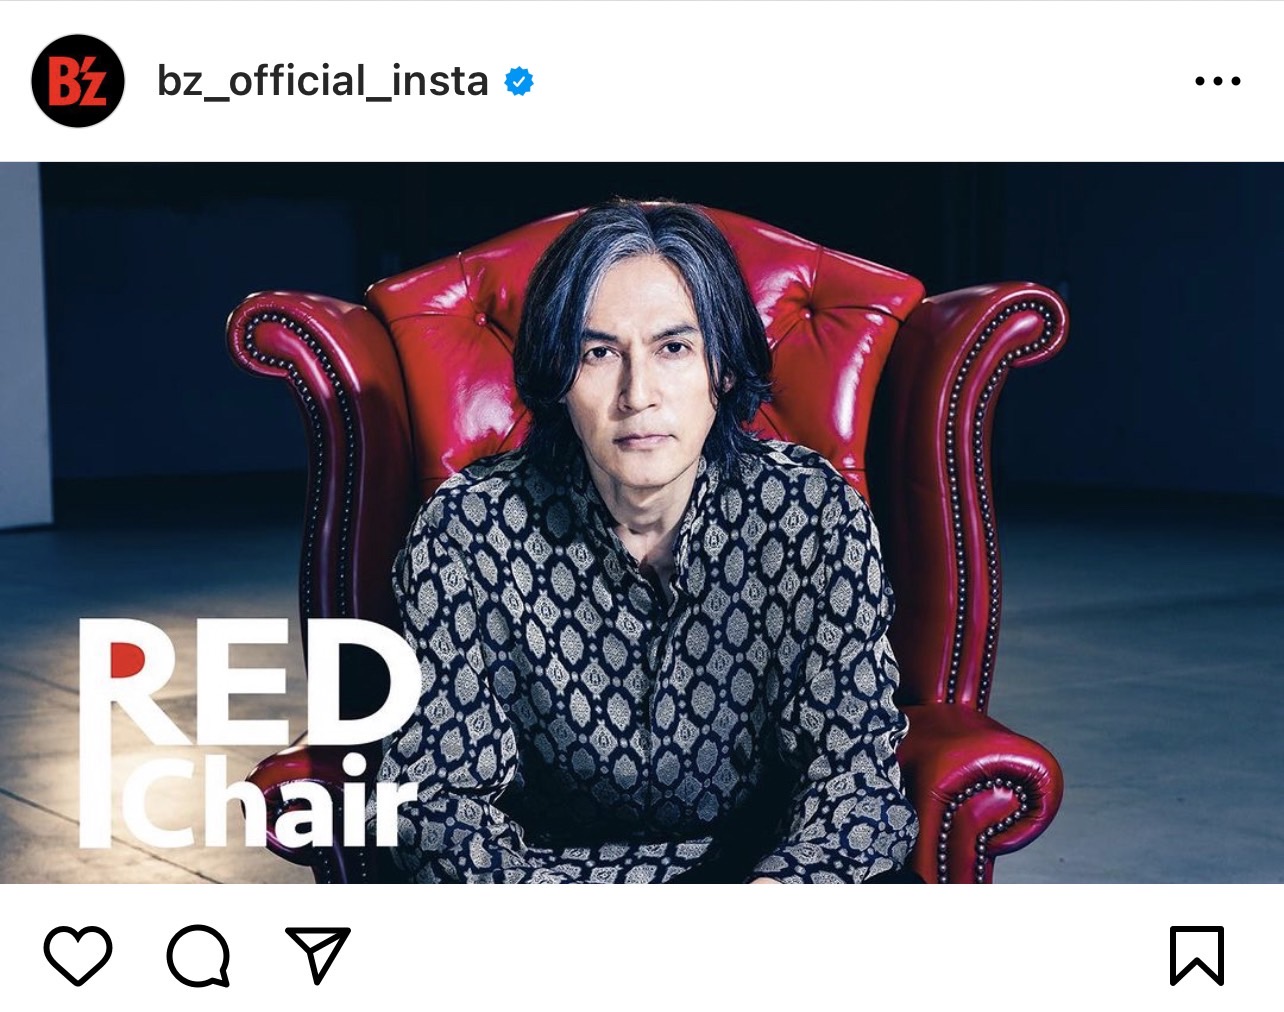 稲葉浩志『RED Chair』出演時の写真のキャプチャ